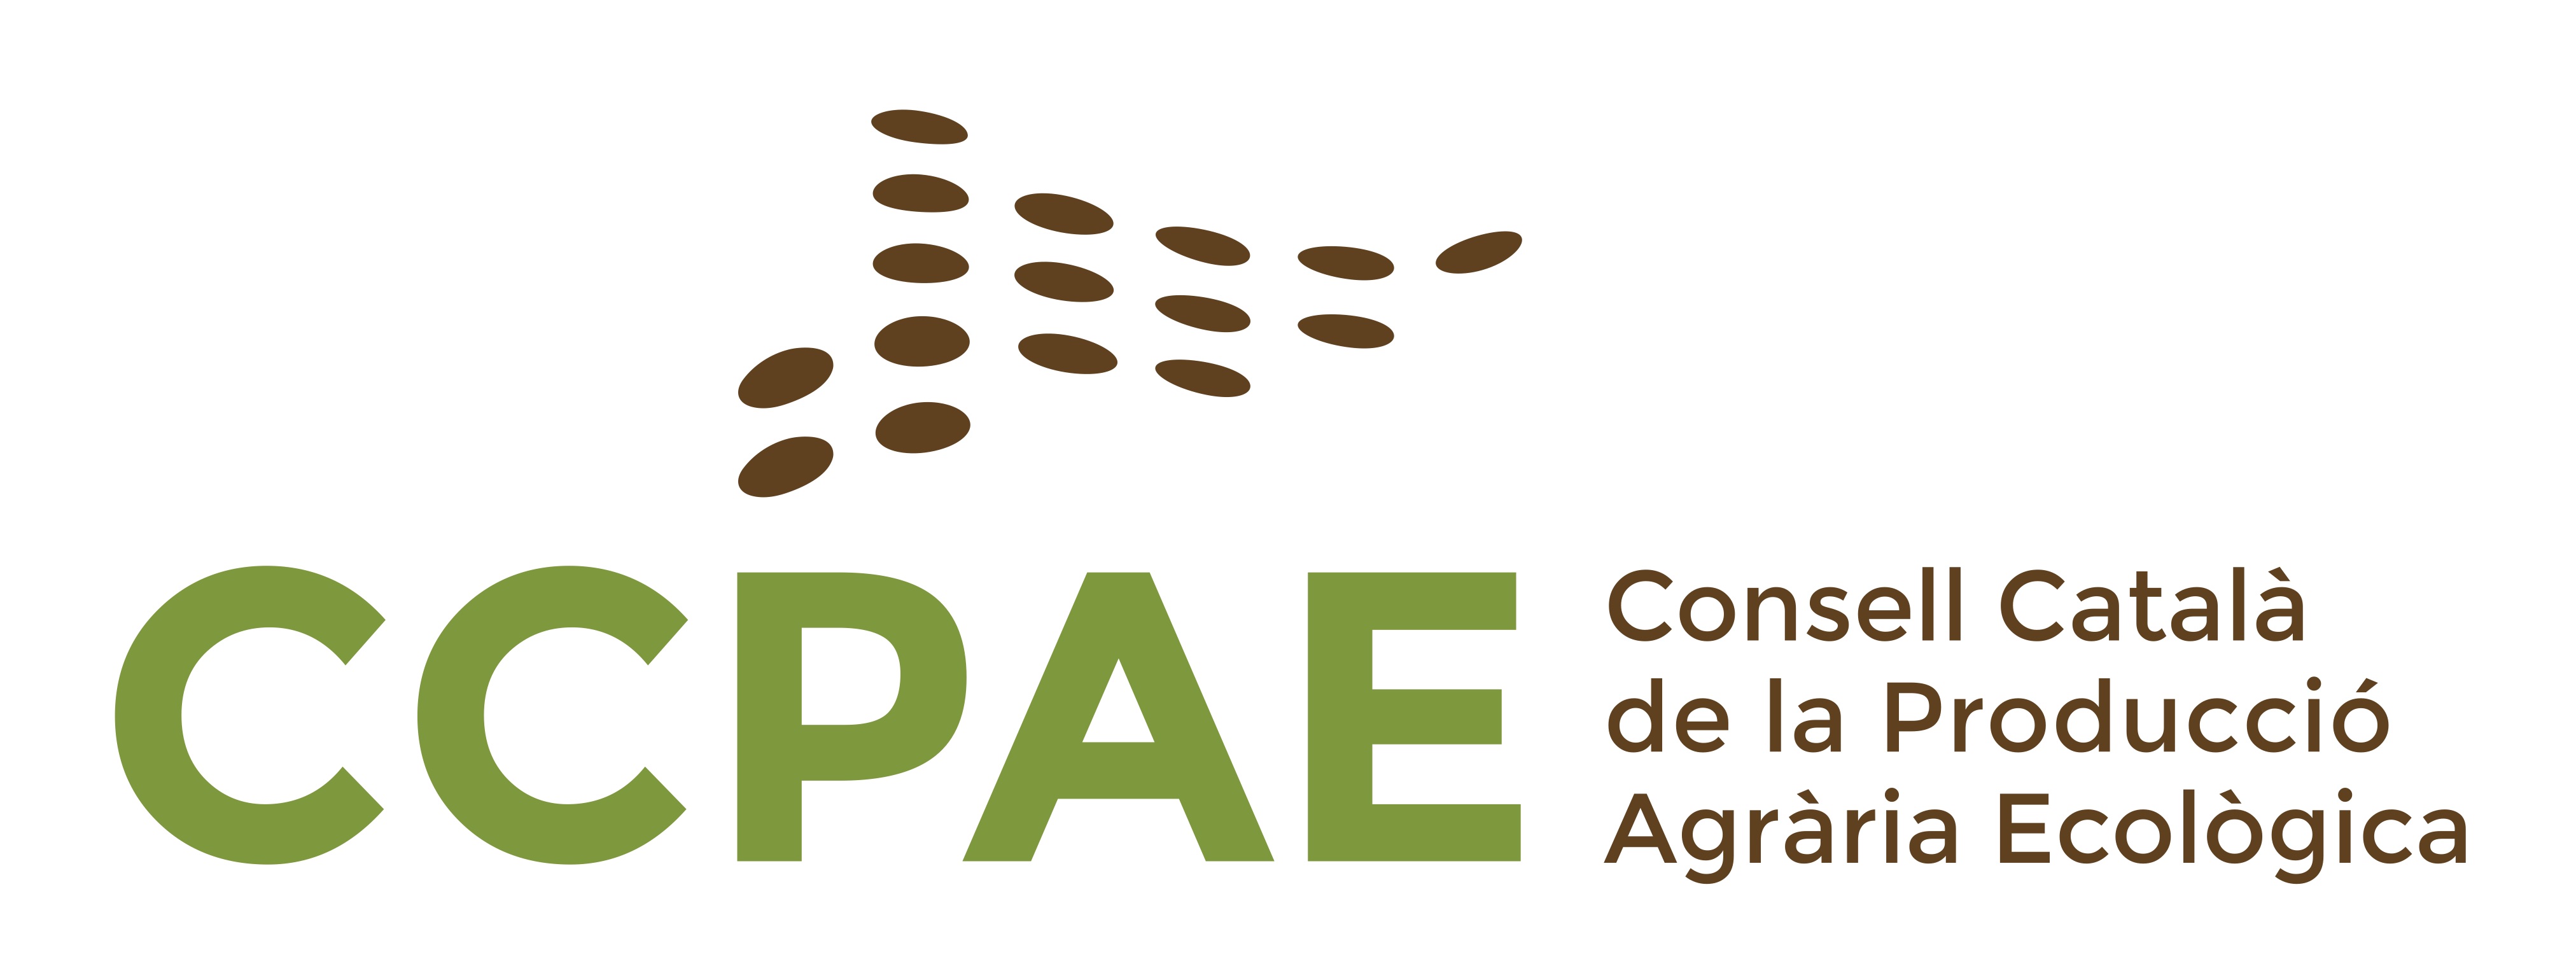 CCPAE logo nom